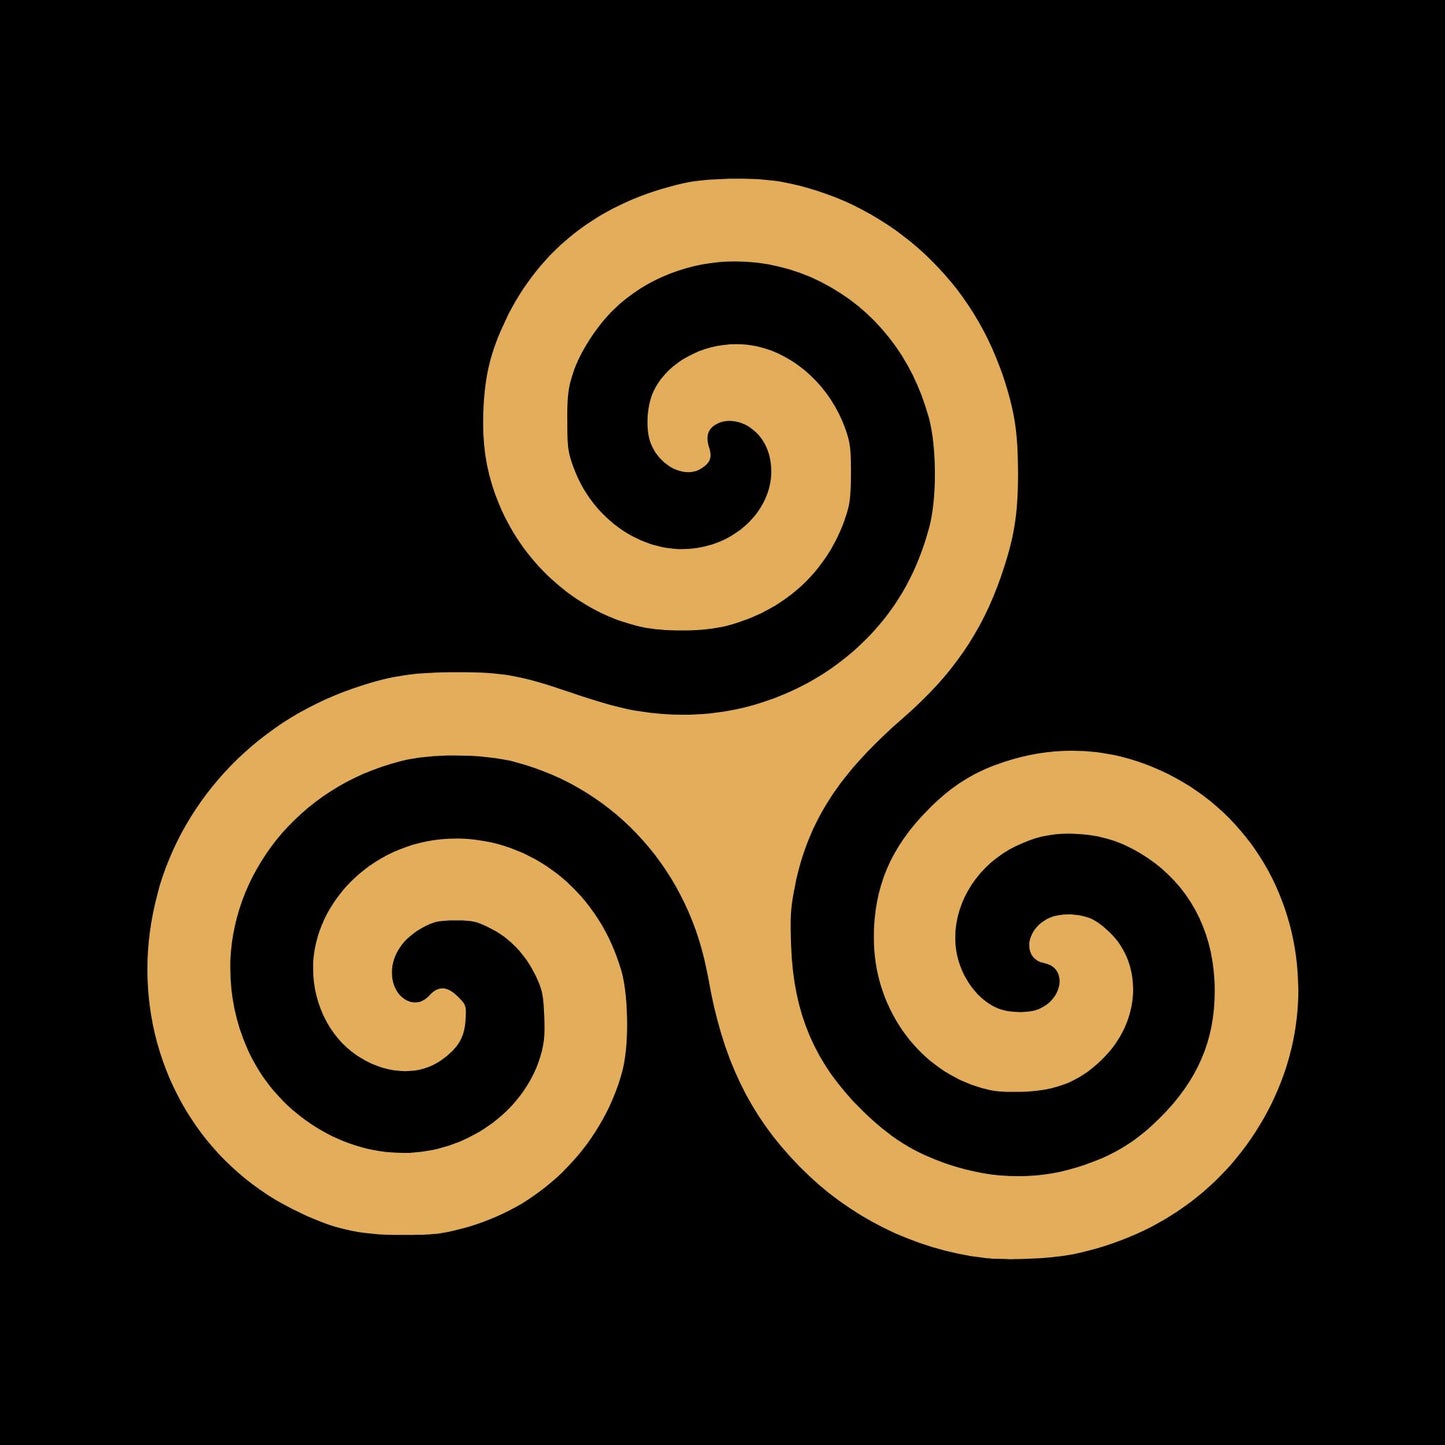 Celtic Triskele Carved Wooden Irish Symbol